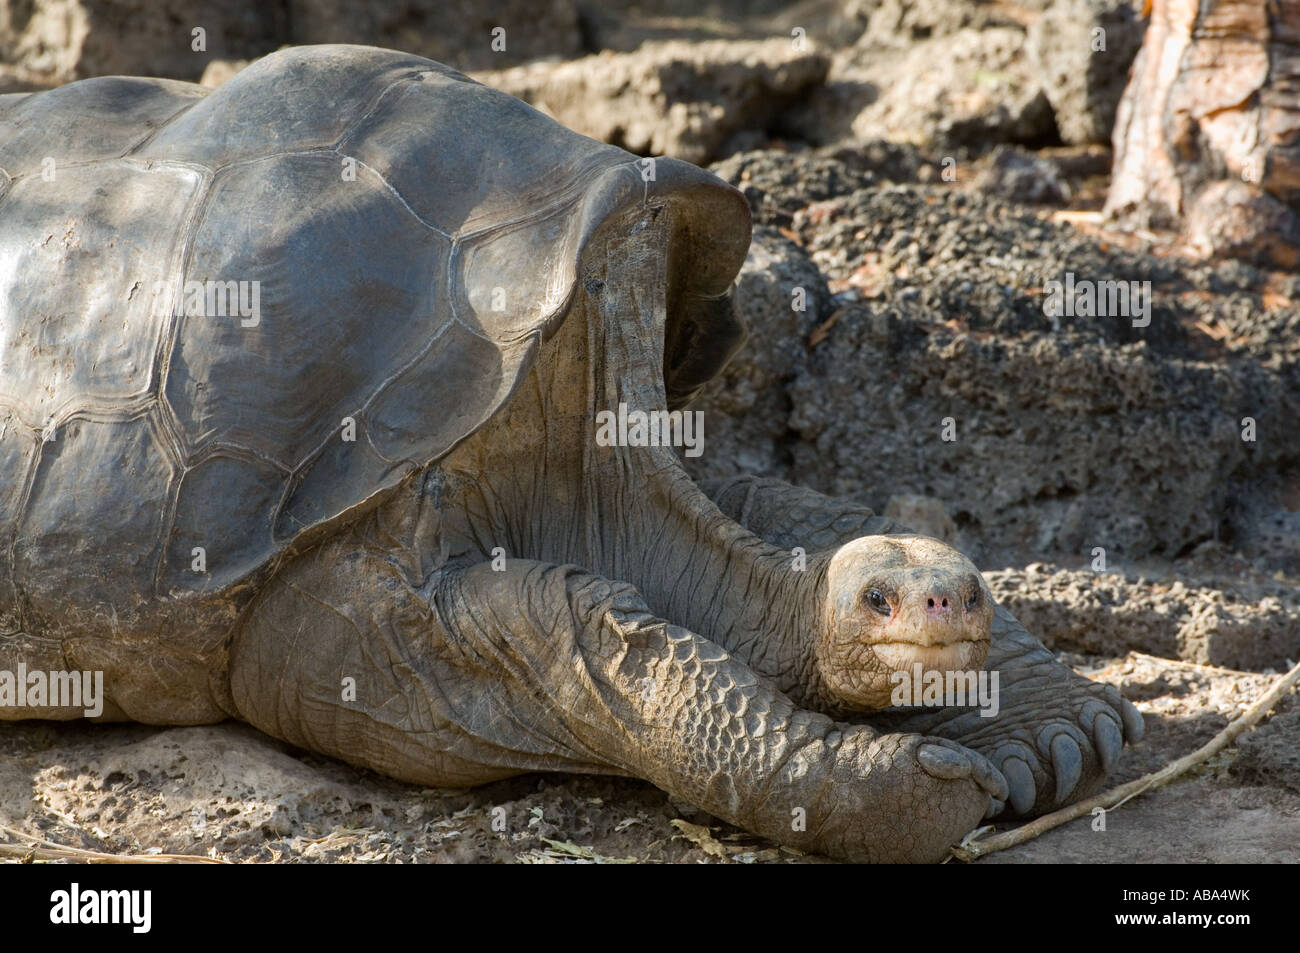 "Lonesome George" starb der Pinta Riesenschildkröte (Chelonoidis Nigra Abingdonii) männlich, ausgestorben, am 24.06. 2012. Stockfoto